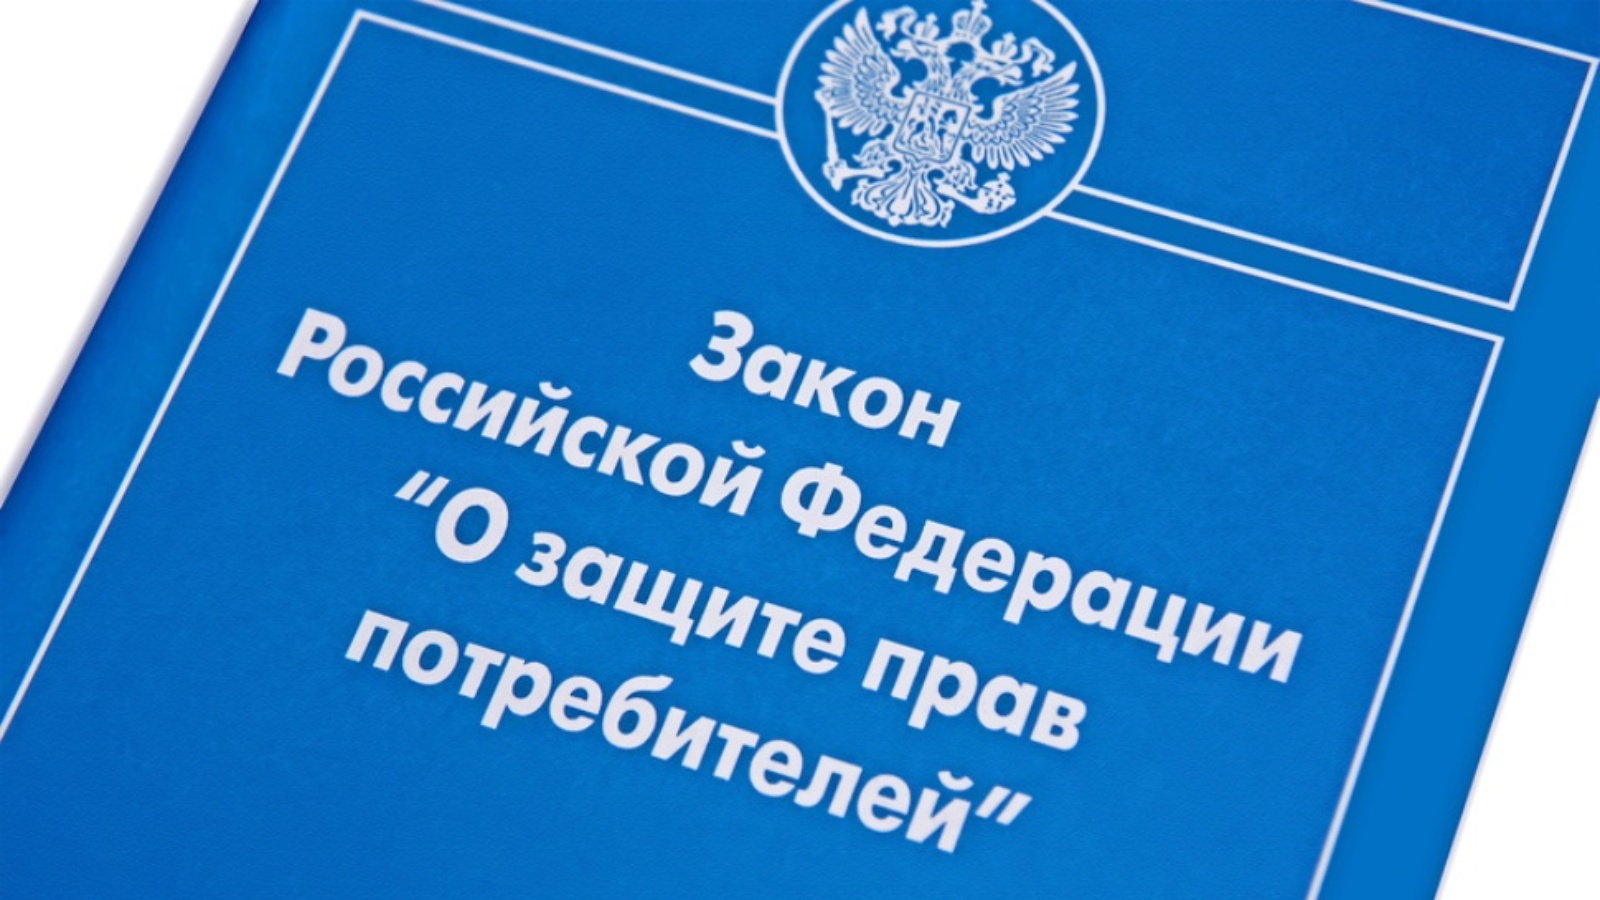 Закон защиты прав потребителей россии